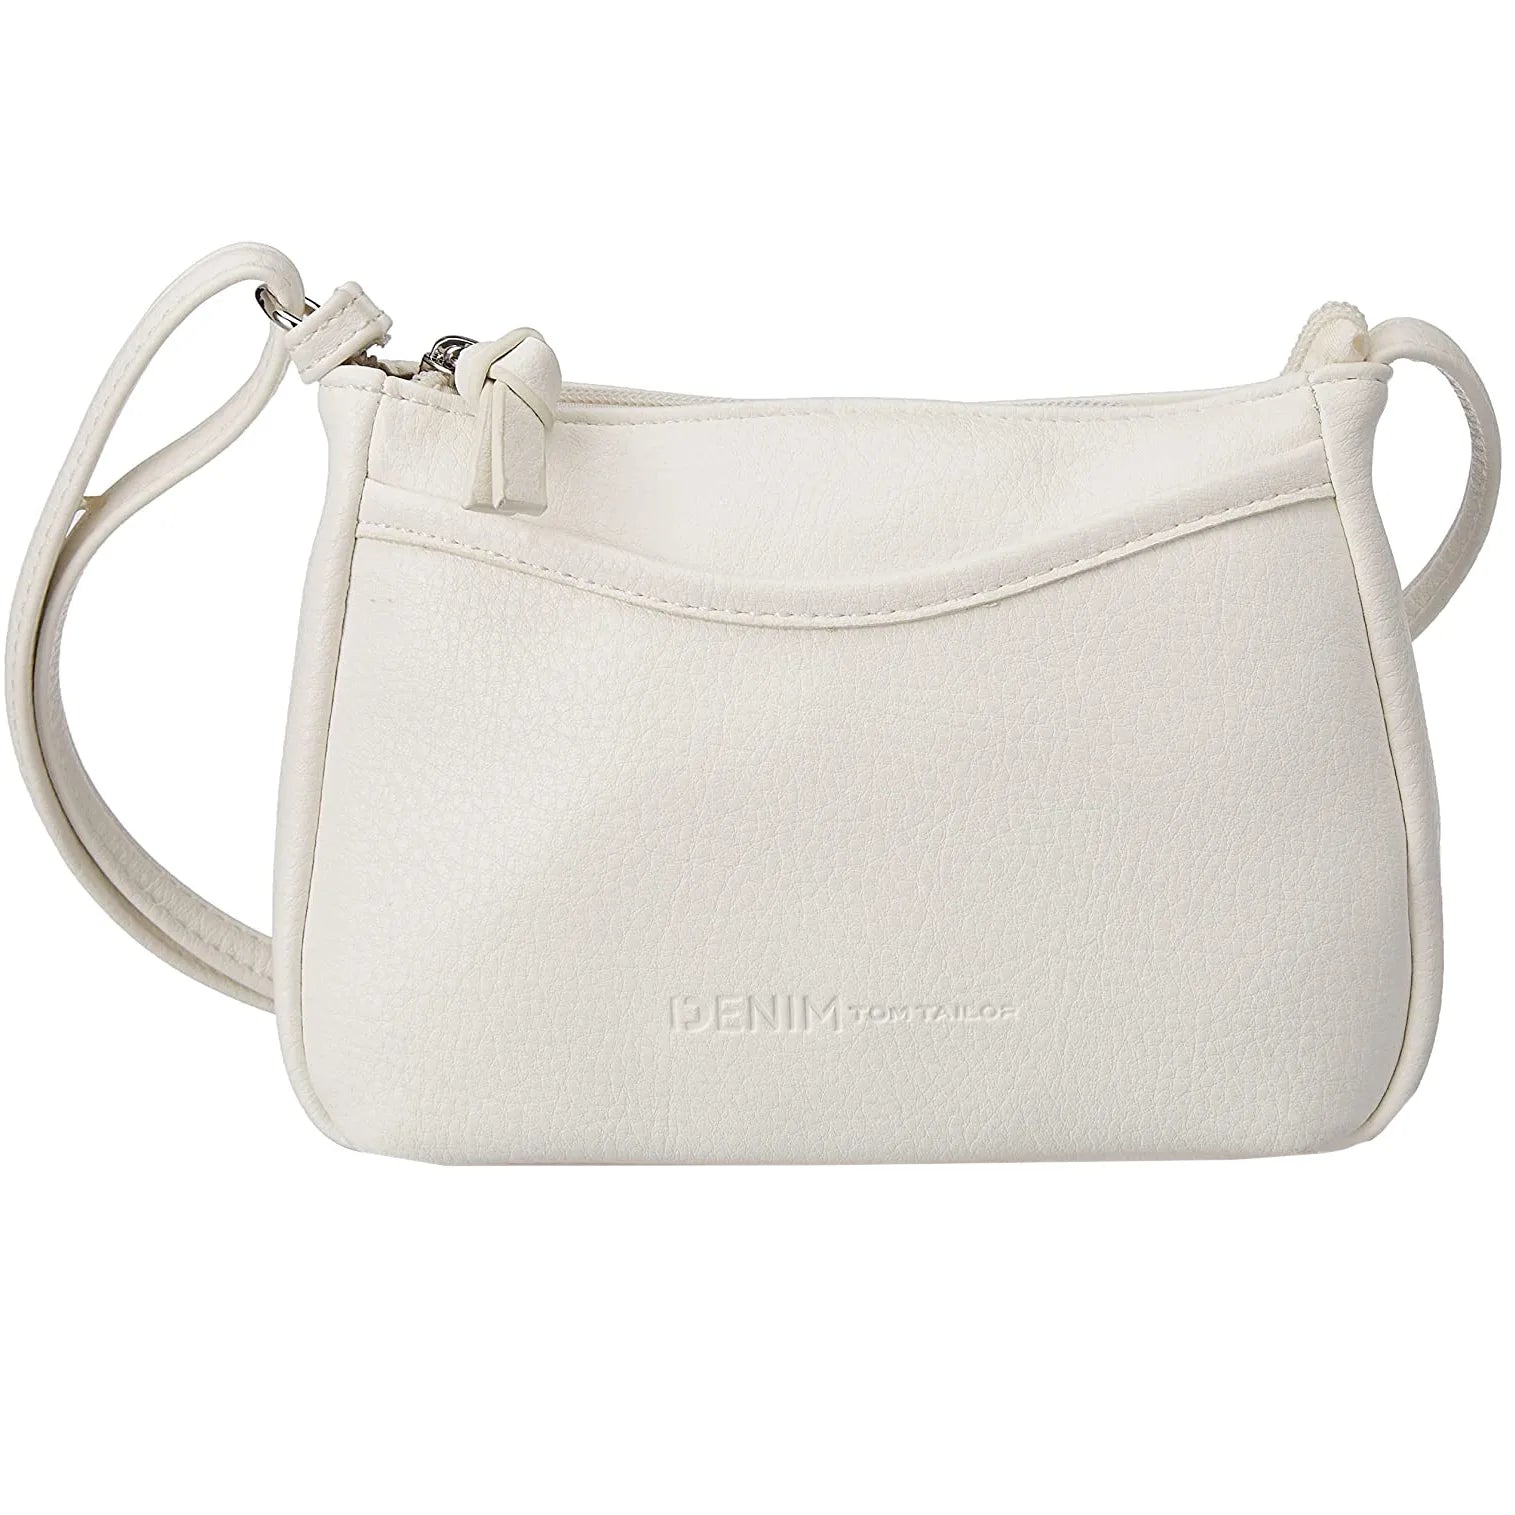 Tom Tailor Bags Cilia handbag 20 cm - white